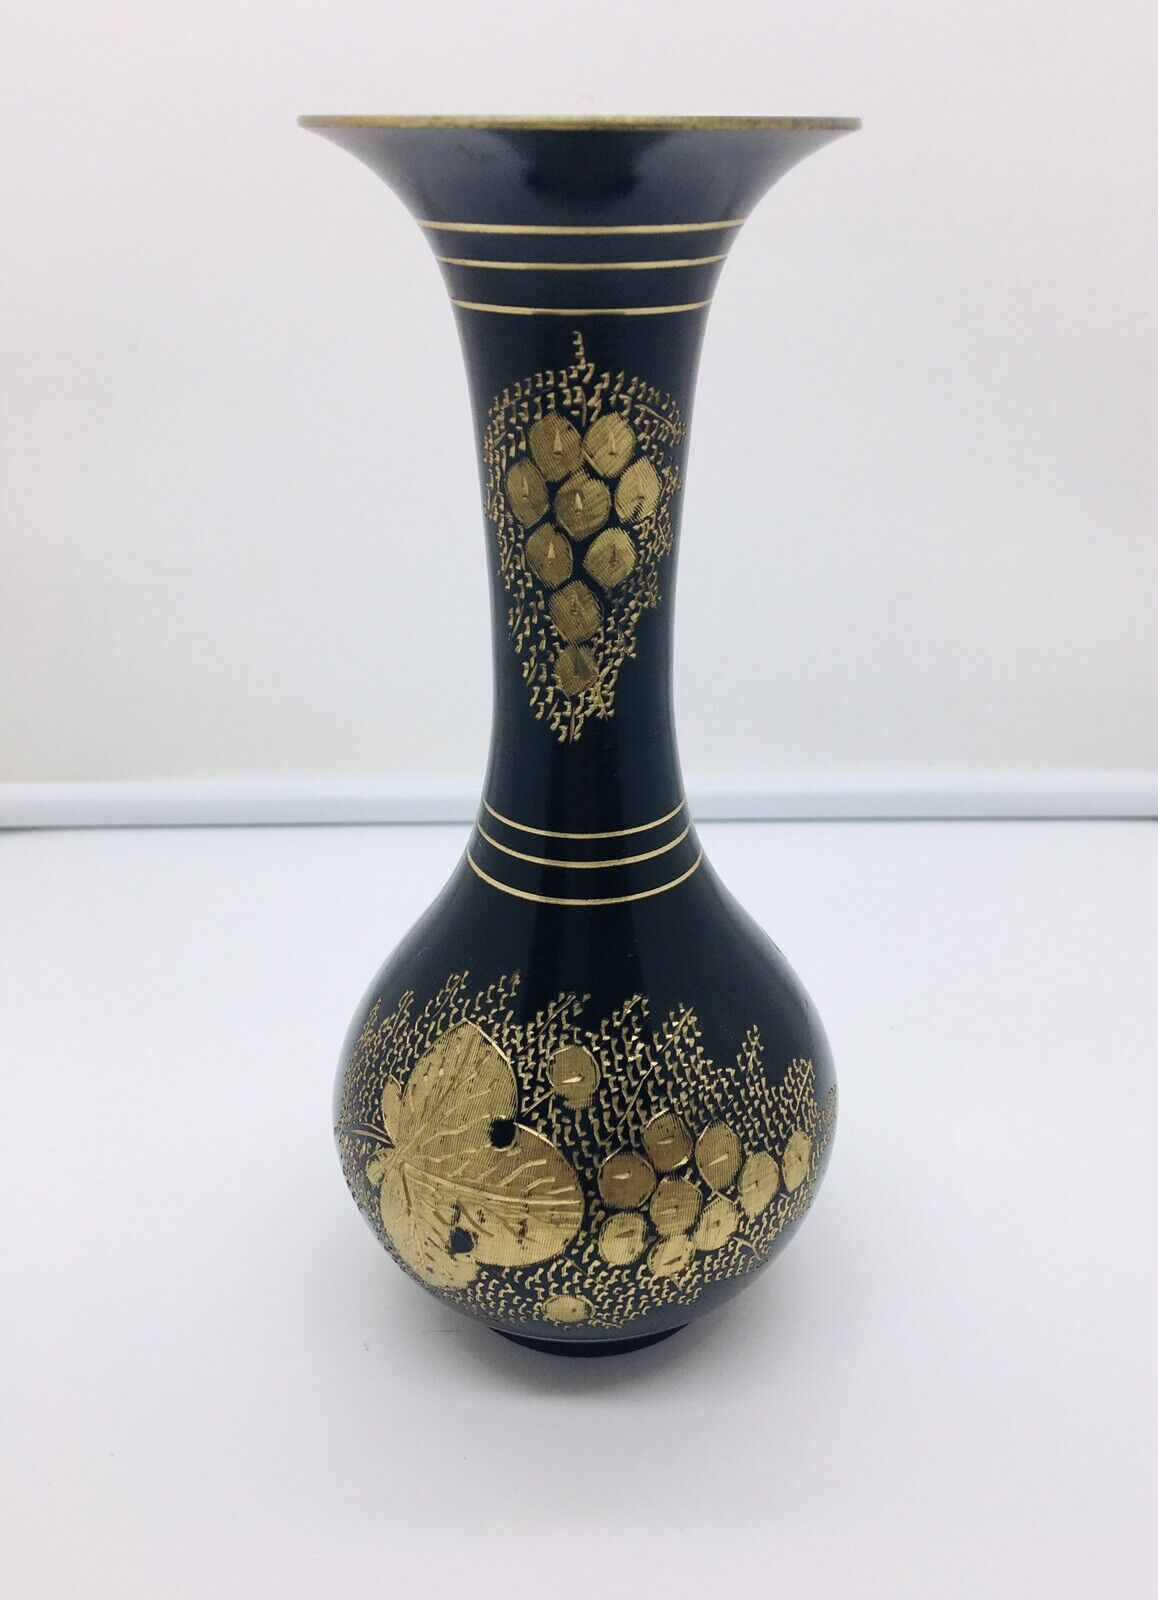 Vintage Solid Brass Vase With Etched Design